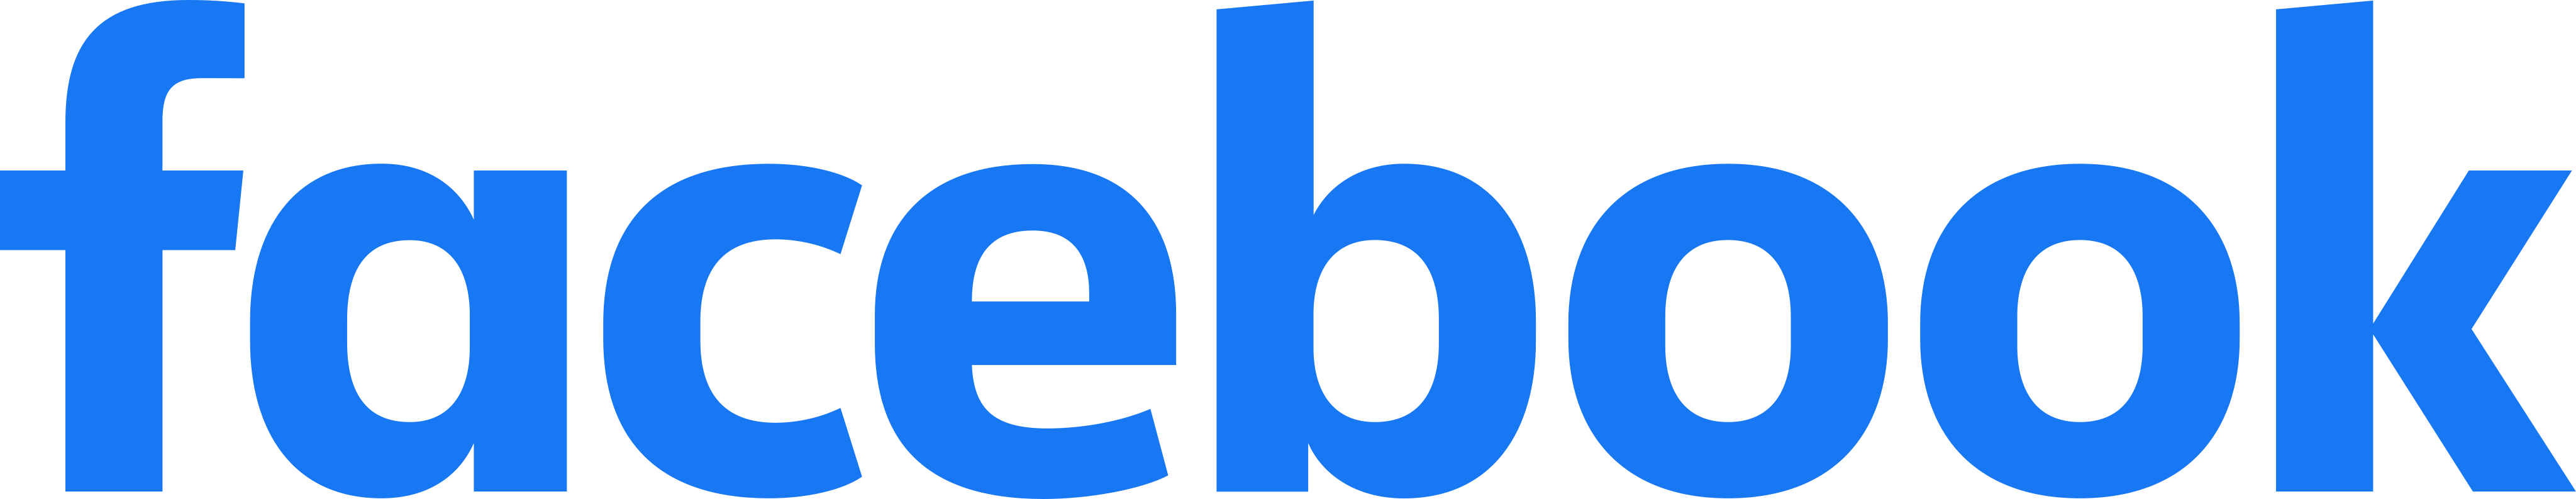 facebook-logo-15